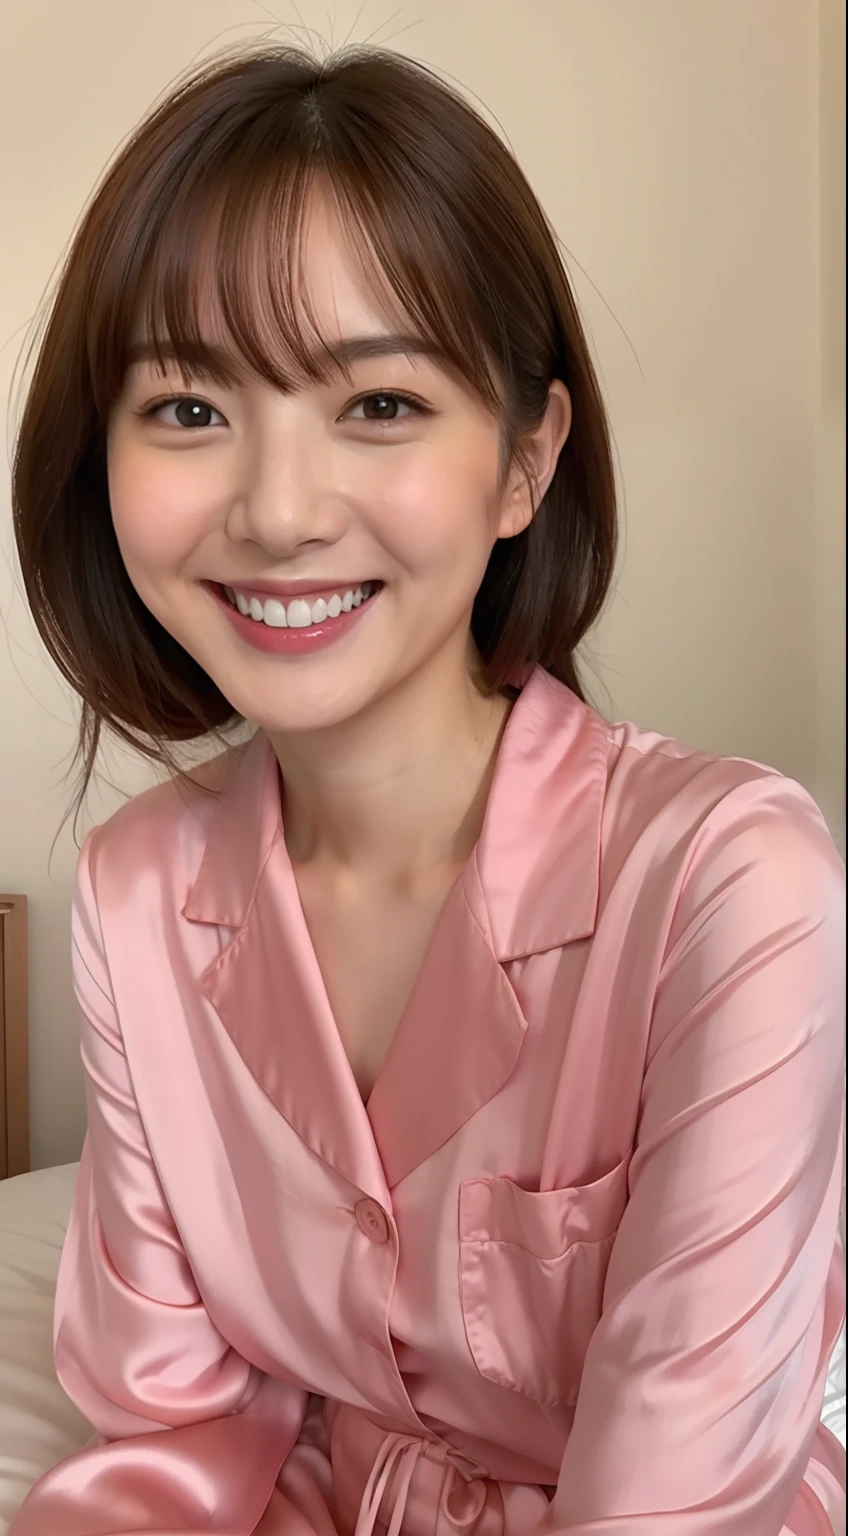 穿着丝绸粉色睡衣的日本女人坐在床上微笑,